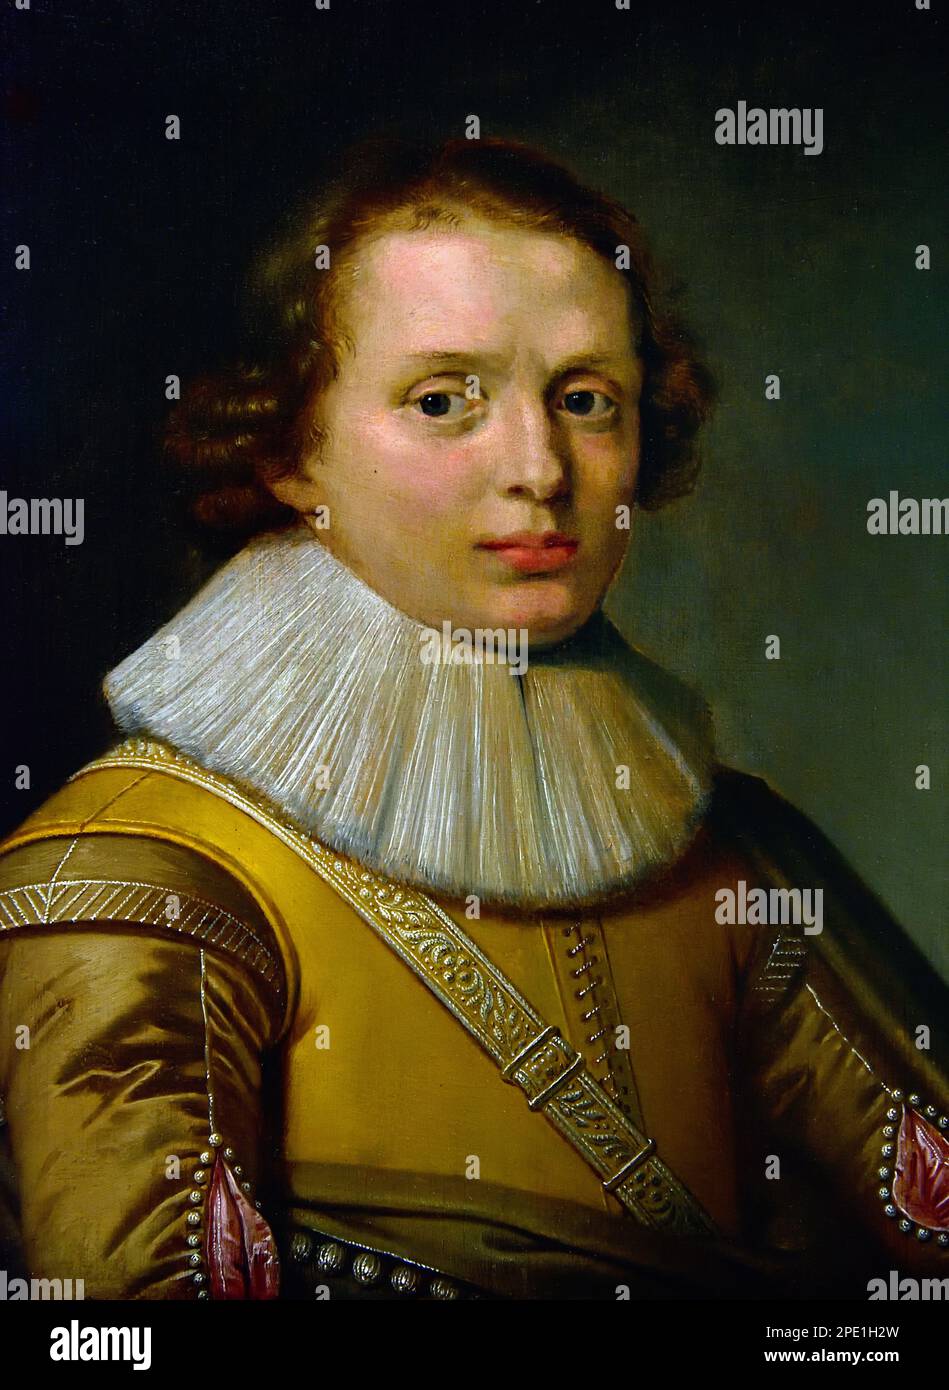 Portrait d'un jeune homme 1630 David Bailly (1584–1657) est un peintre hollandais de l'âge d'or. Musée des beaux-arts, Leiden, Lakenhal, pays-Bas, Hollande, Néerlandais. Banque D'Images